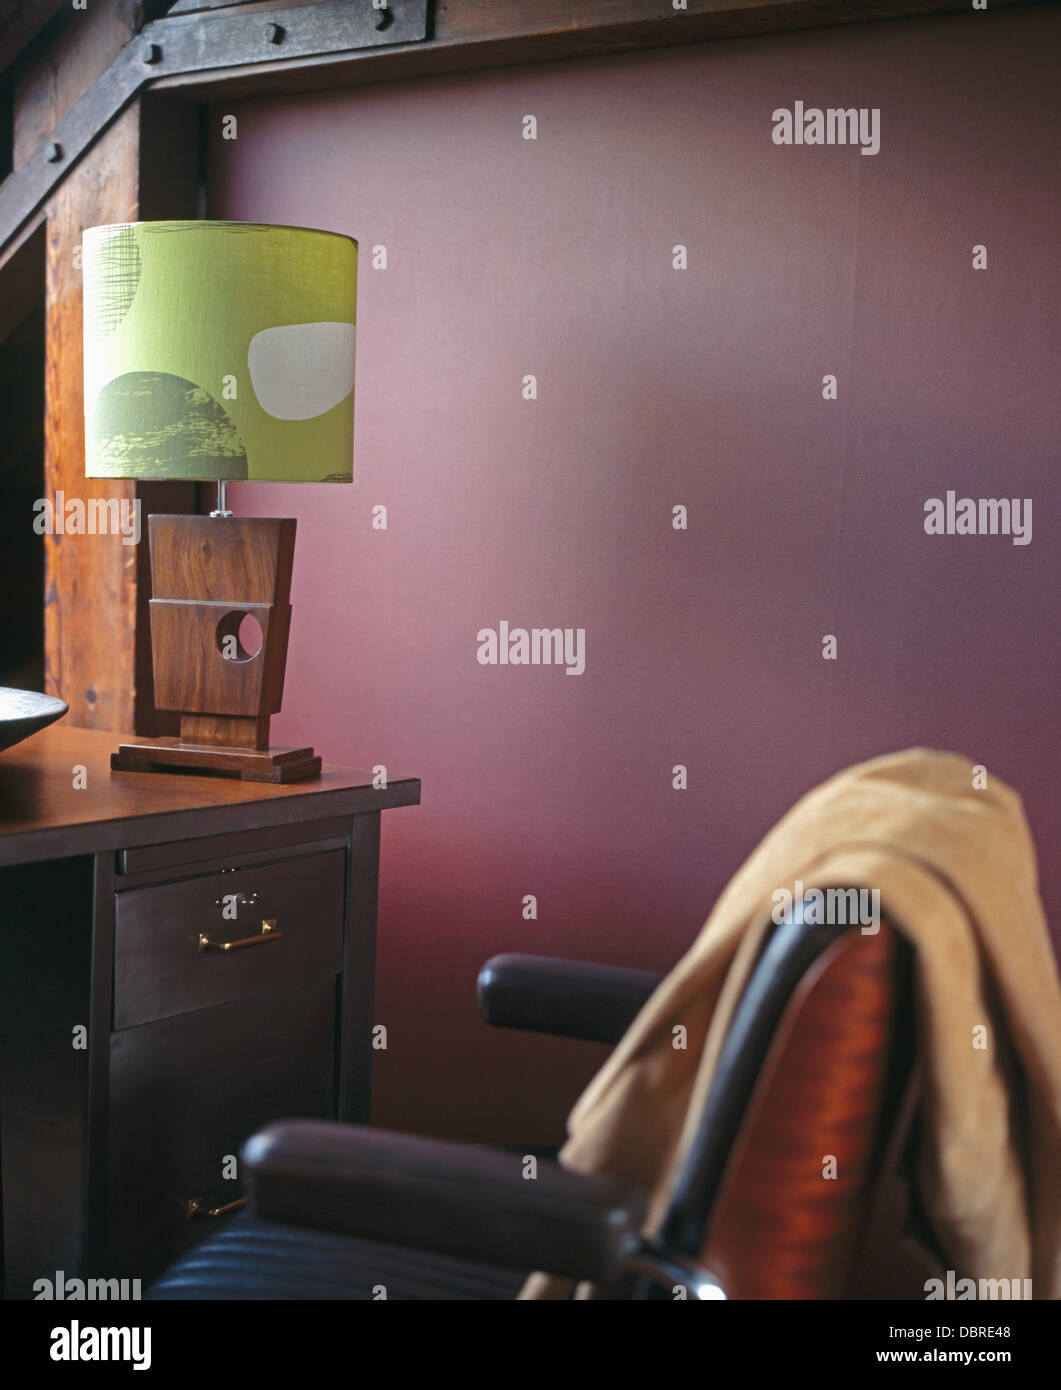 Lampe en bois de style années 50 avec ombre verte sur 24 en violet avec l'étude de conversion loft jeter sur une chaise en cuir beige Banque D'Images